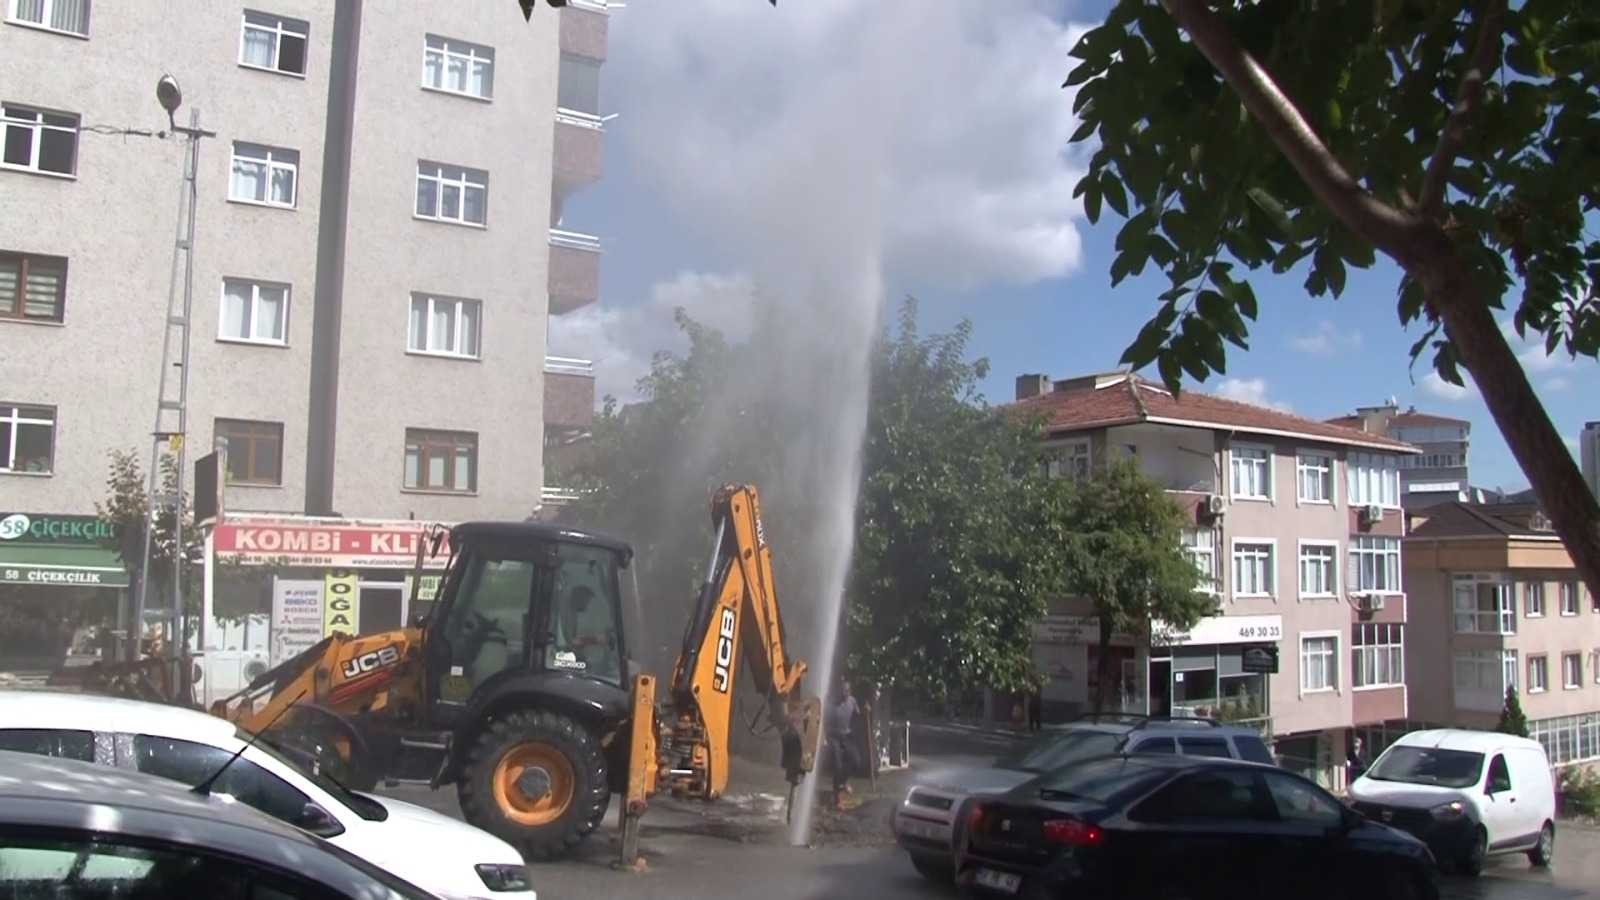 Ataşehir’de İSKİ çalışması sırasında boru patladı, su metrelerce yükseğe fışkırdı #istanbul